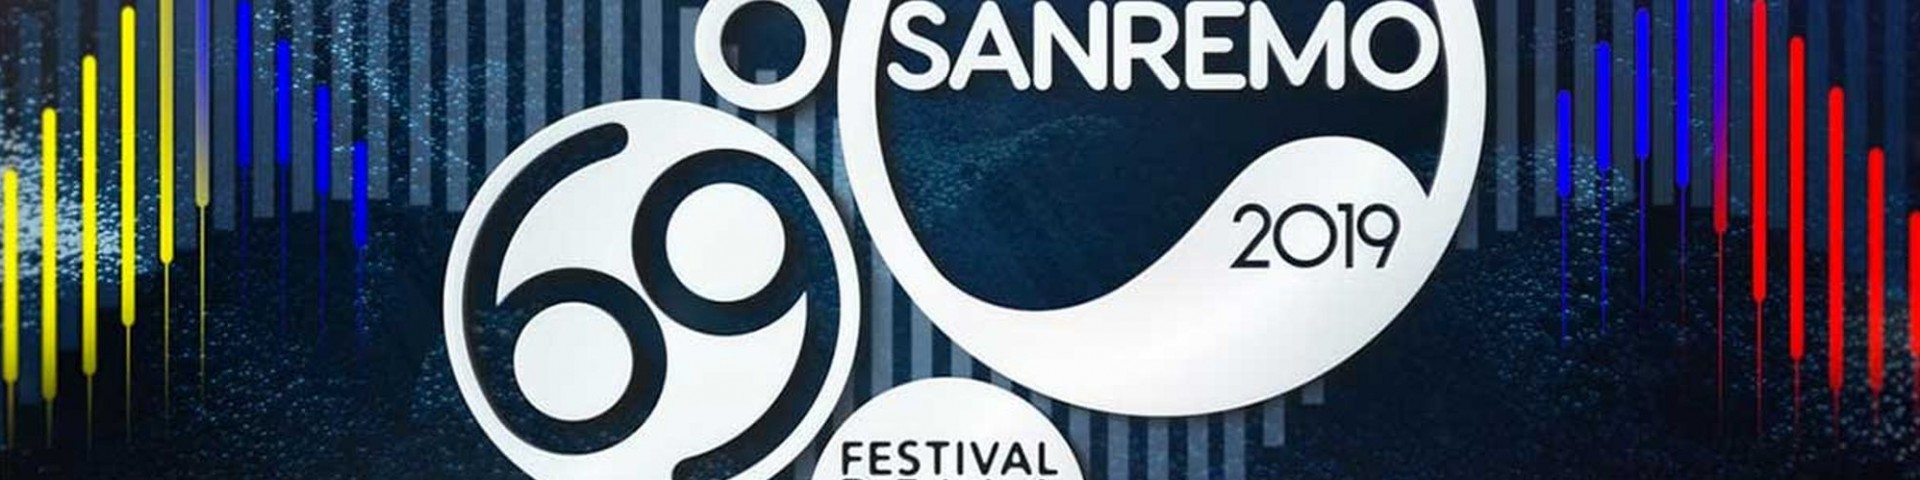 Sanremo 2019: tutti i testi su TV Sorrisi e Canzoni del 29 gennaio